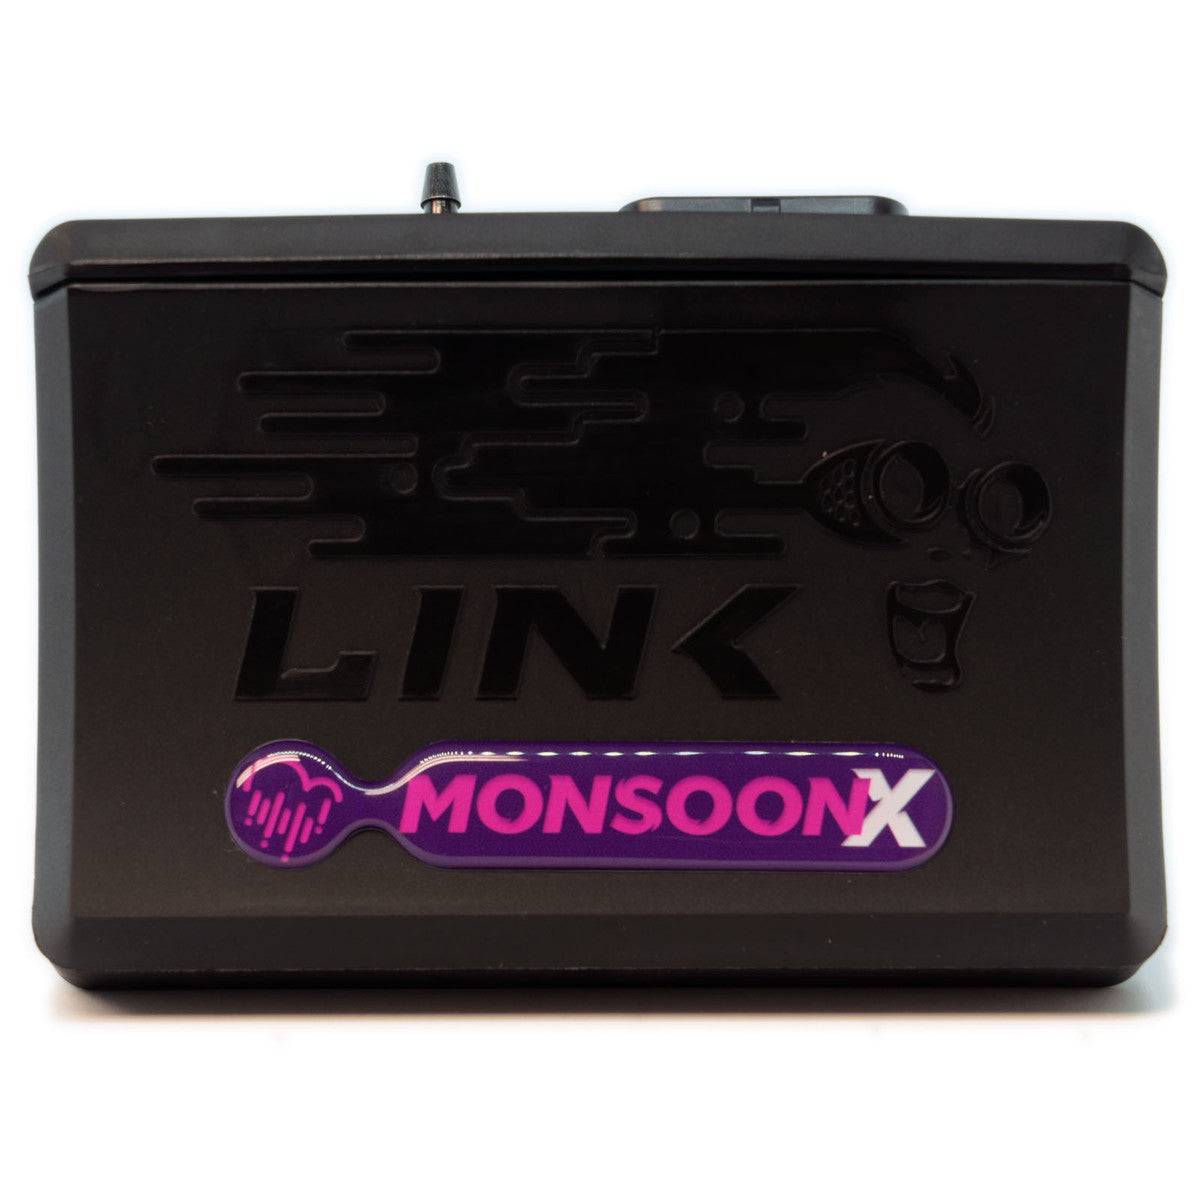 Link ECU MonsoonX 4x fuel & Ignition; onboard 7 bar MAP sensor - Future Motorsports - ENGINE MANAGEMENT / ECU - LINK - Future Motorsports